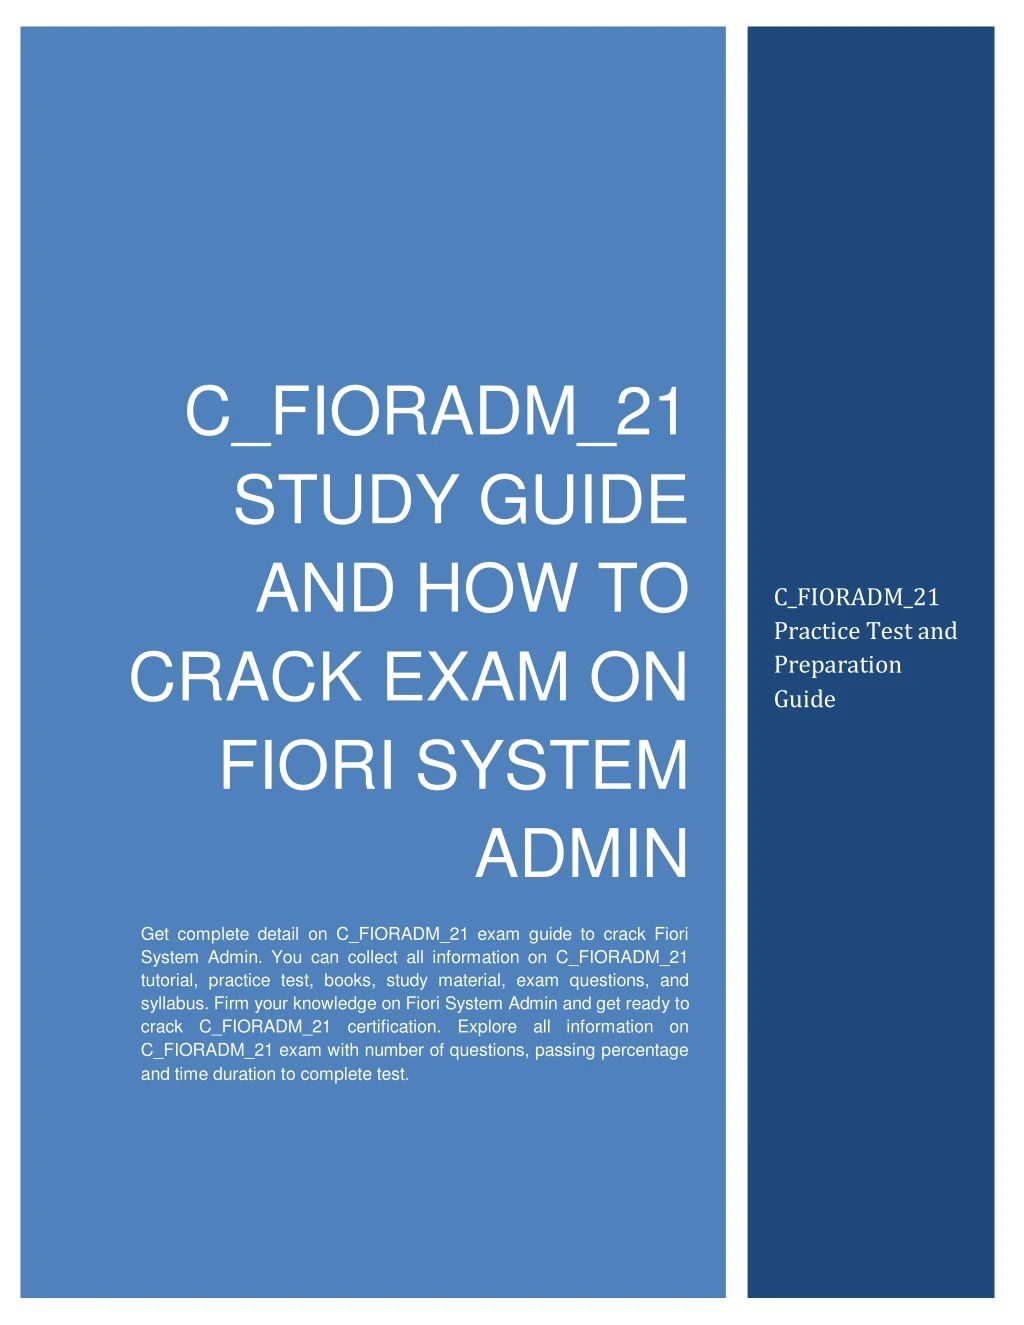 c fioradm 21 study guide and how to crack exam